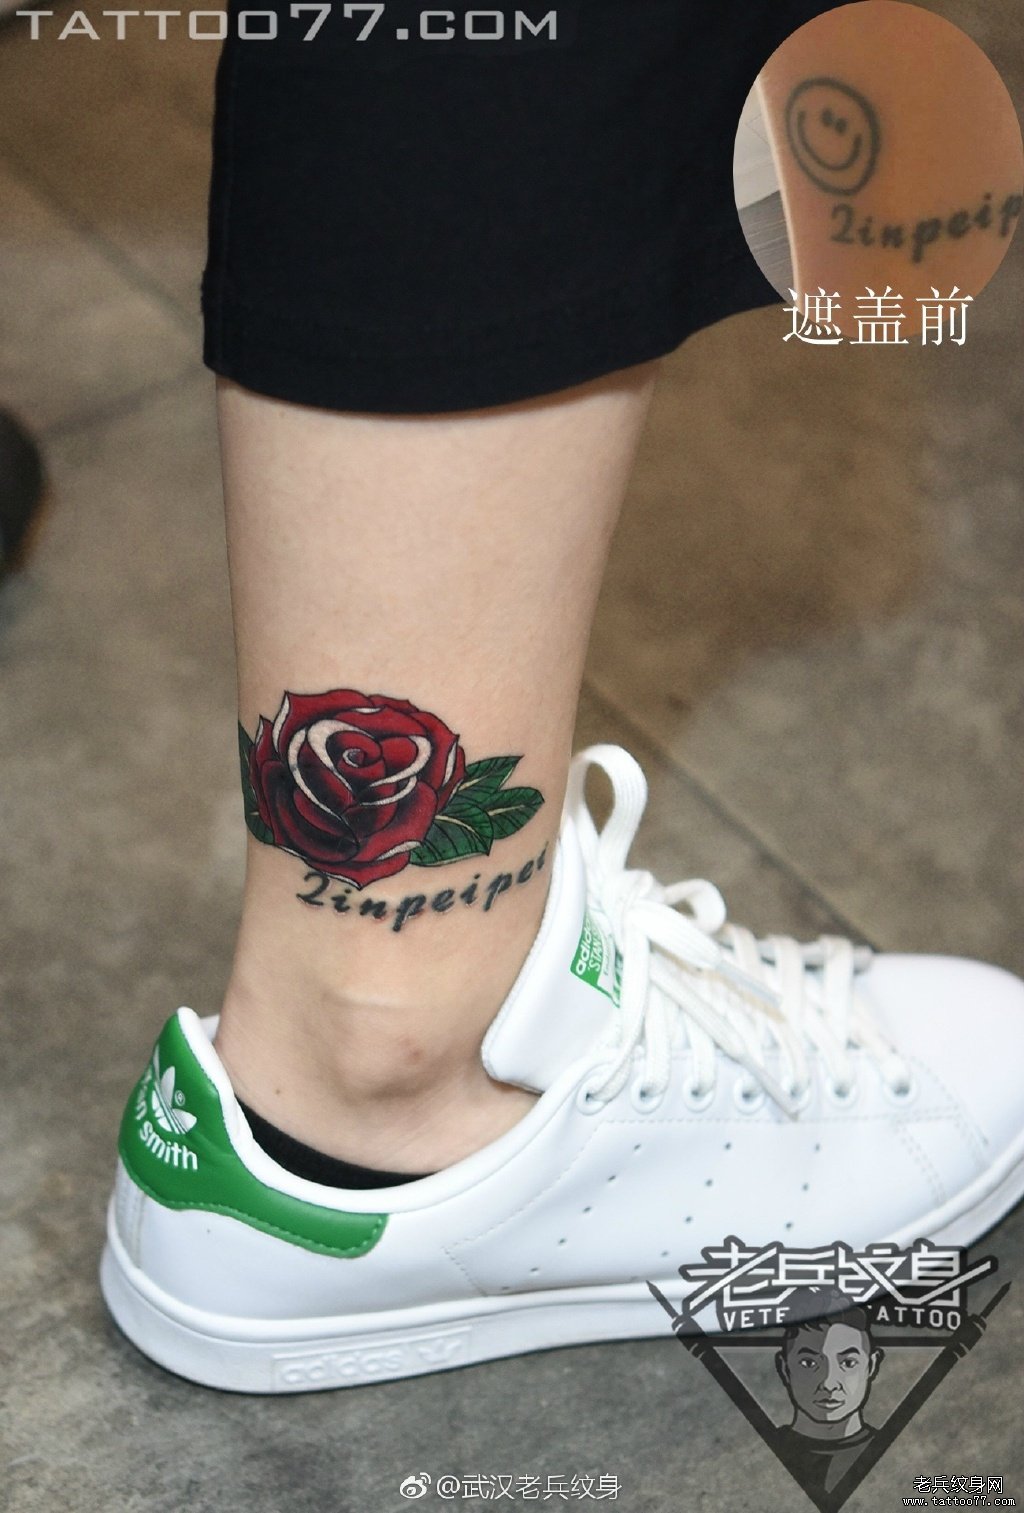 脚踝玫瑰花纹身图案作品遮盖旧纹身